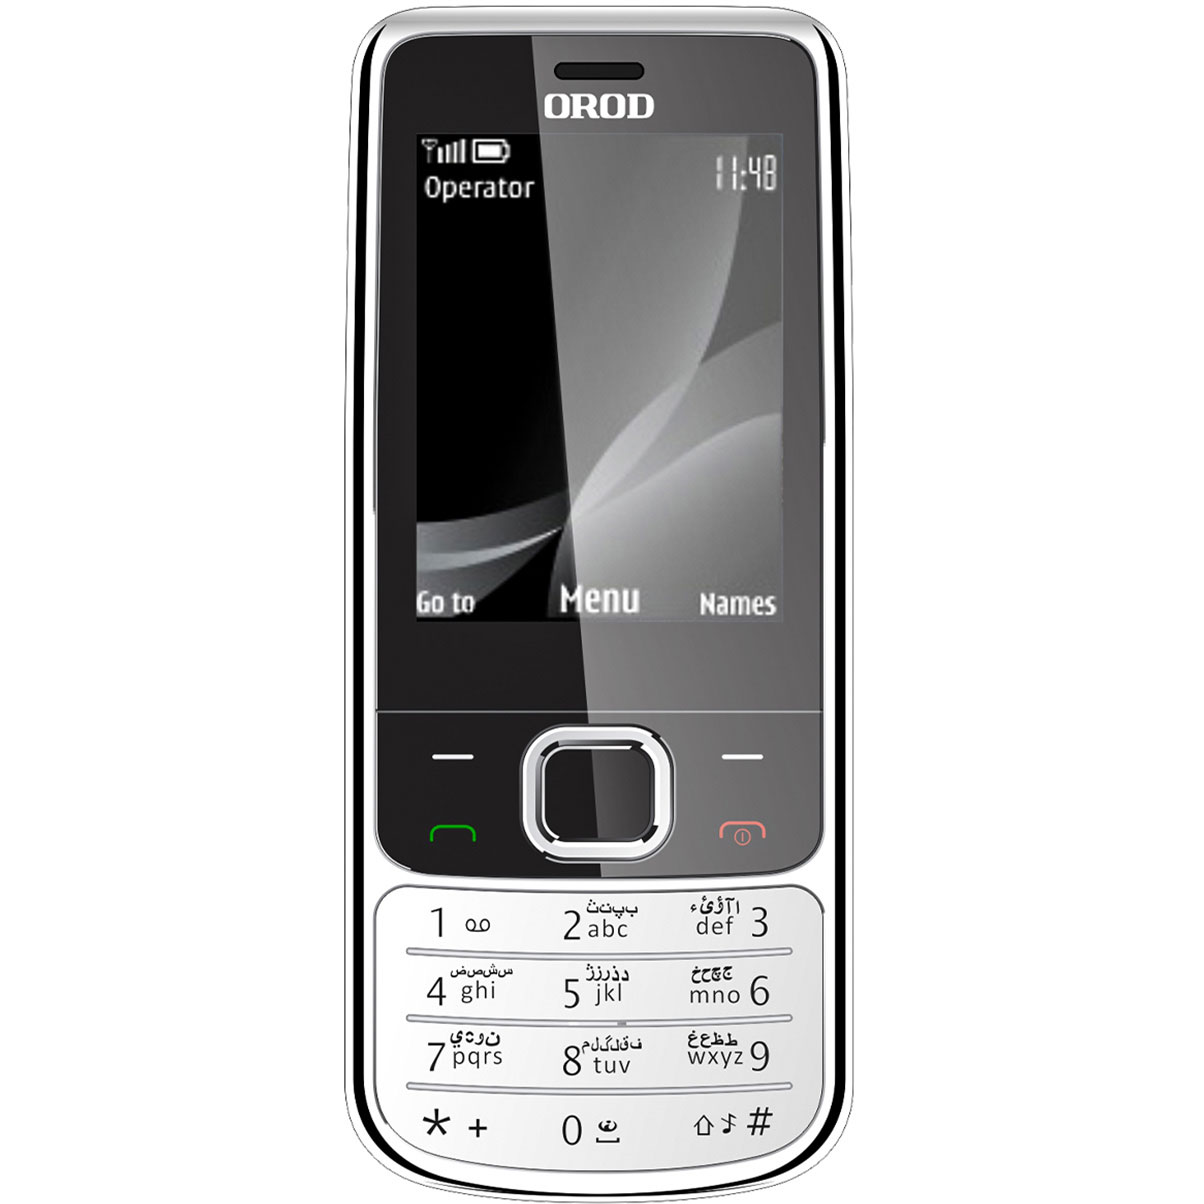 قیمت و مشخصات گوشی موبایل ارد مدل 6700 دو سیم کارت - زیراکو